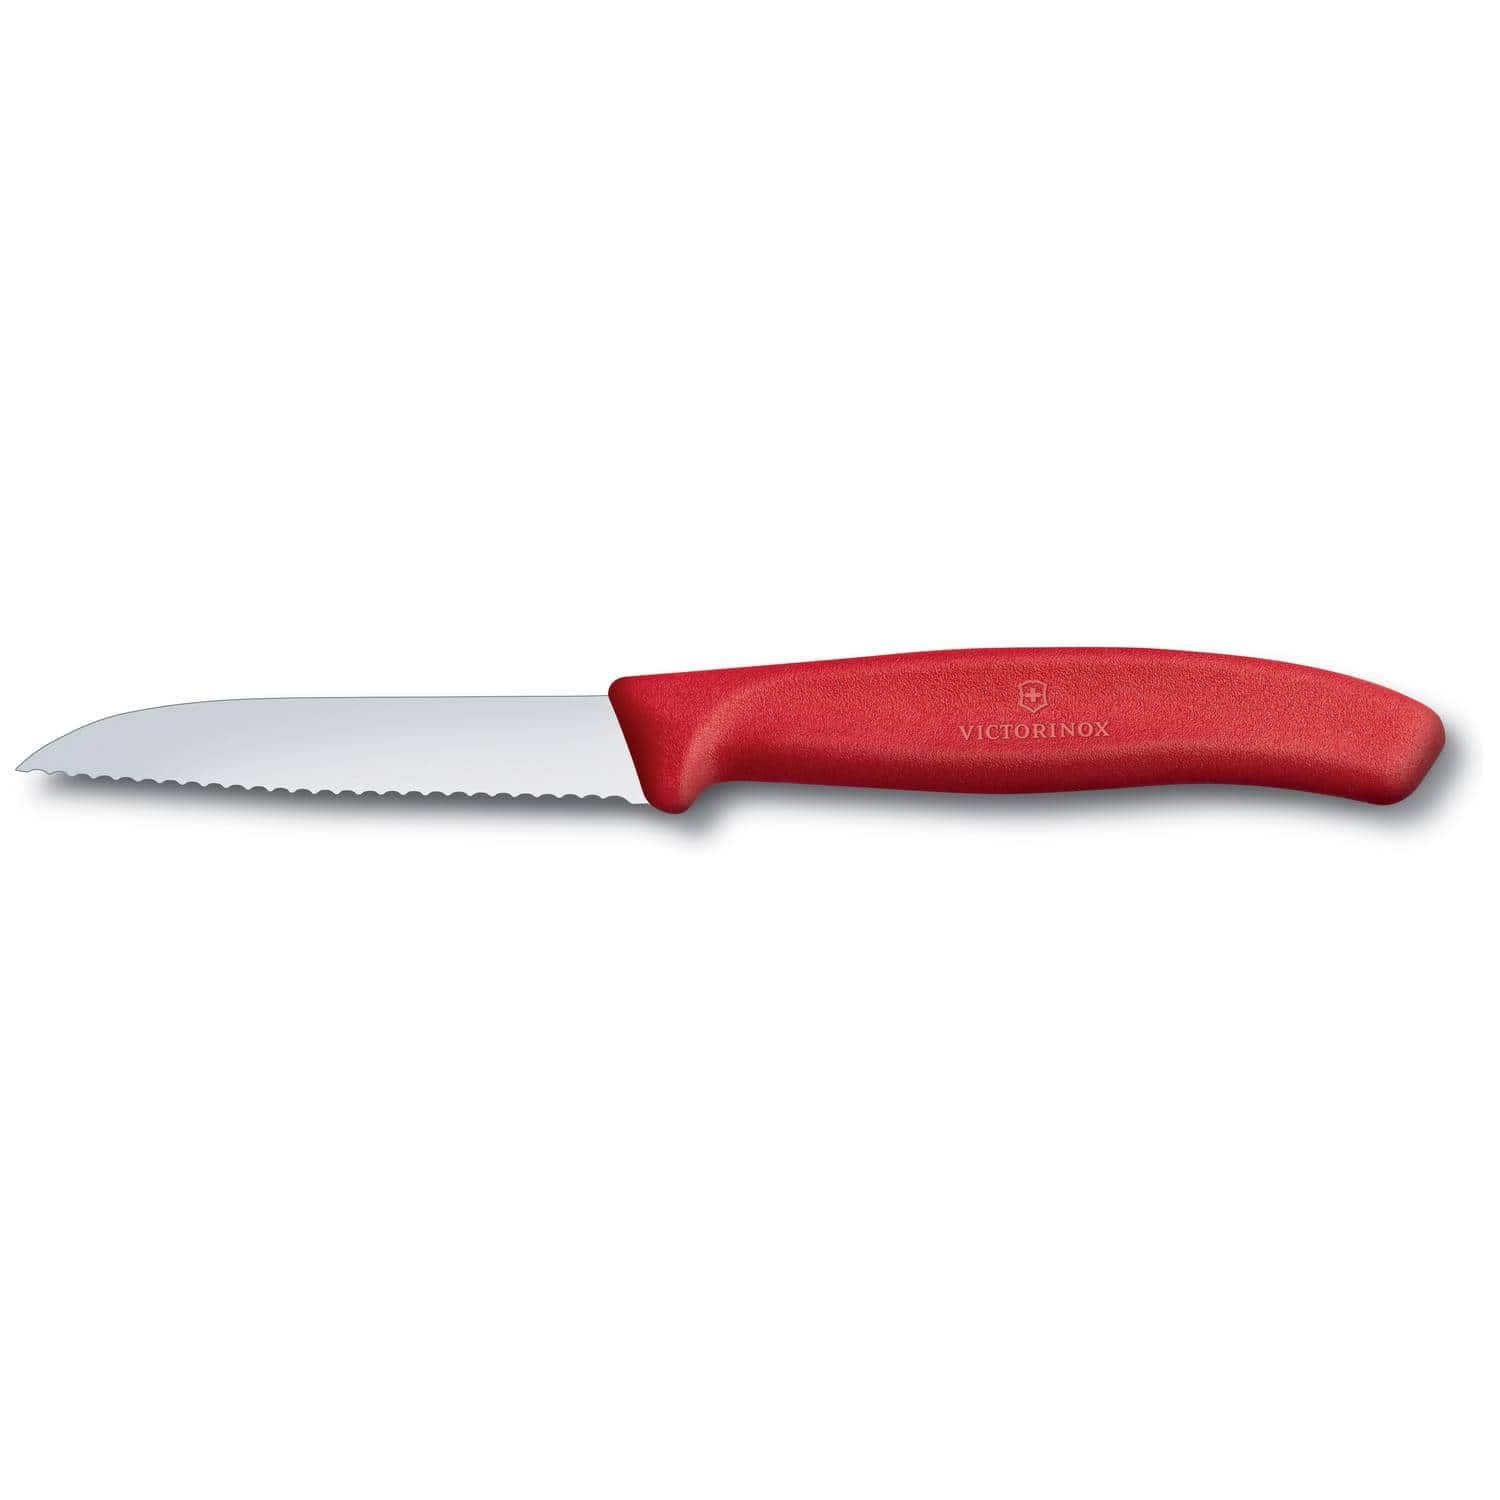 Μαχαίρι Kουζίνας 8cm ίσιο, οδοντωτό, κόκκινη λαβή 038.67431 Swiss Classic Victorinox 6.7431